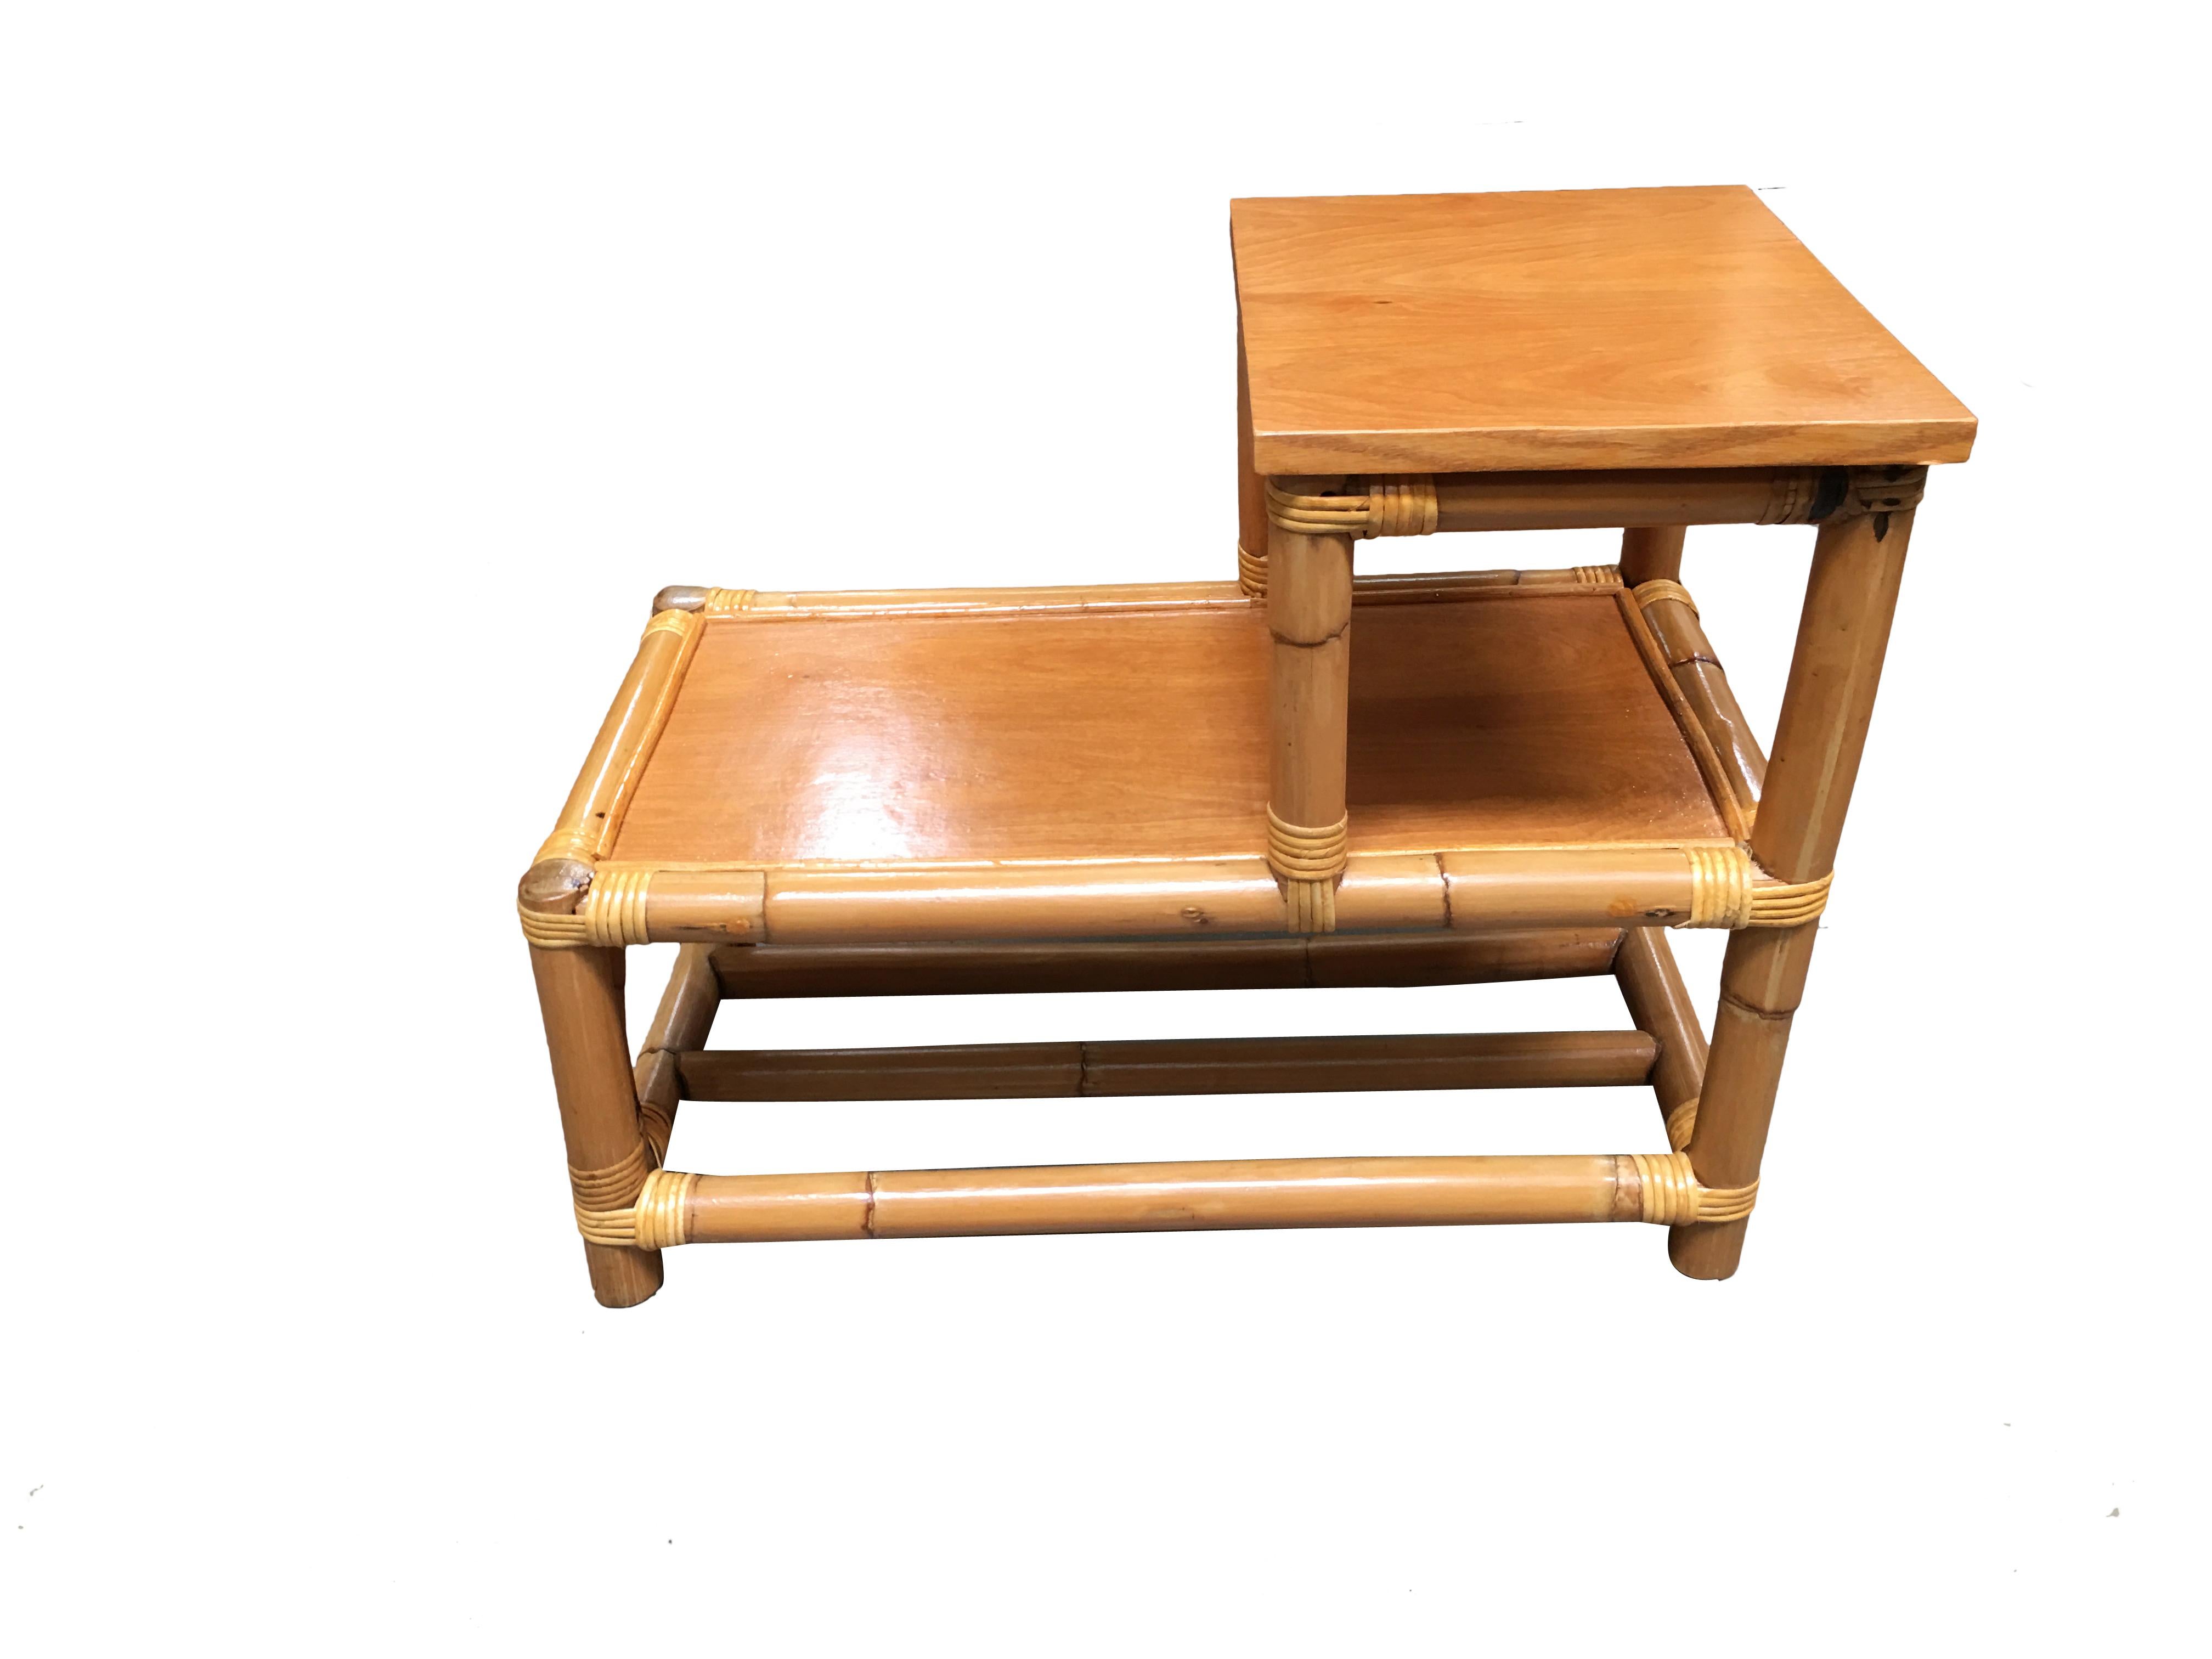 Table d'appoint en rotin à pieds en bâton avec plateaux en bois à deux niveaux, vers 1950. Conçu à la manière de Paul Frankl.
Nous n'achetons et ne vendons que les meilleurs meubles en rotin fabriqués par les meilleurs et les plus célèbres designers